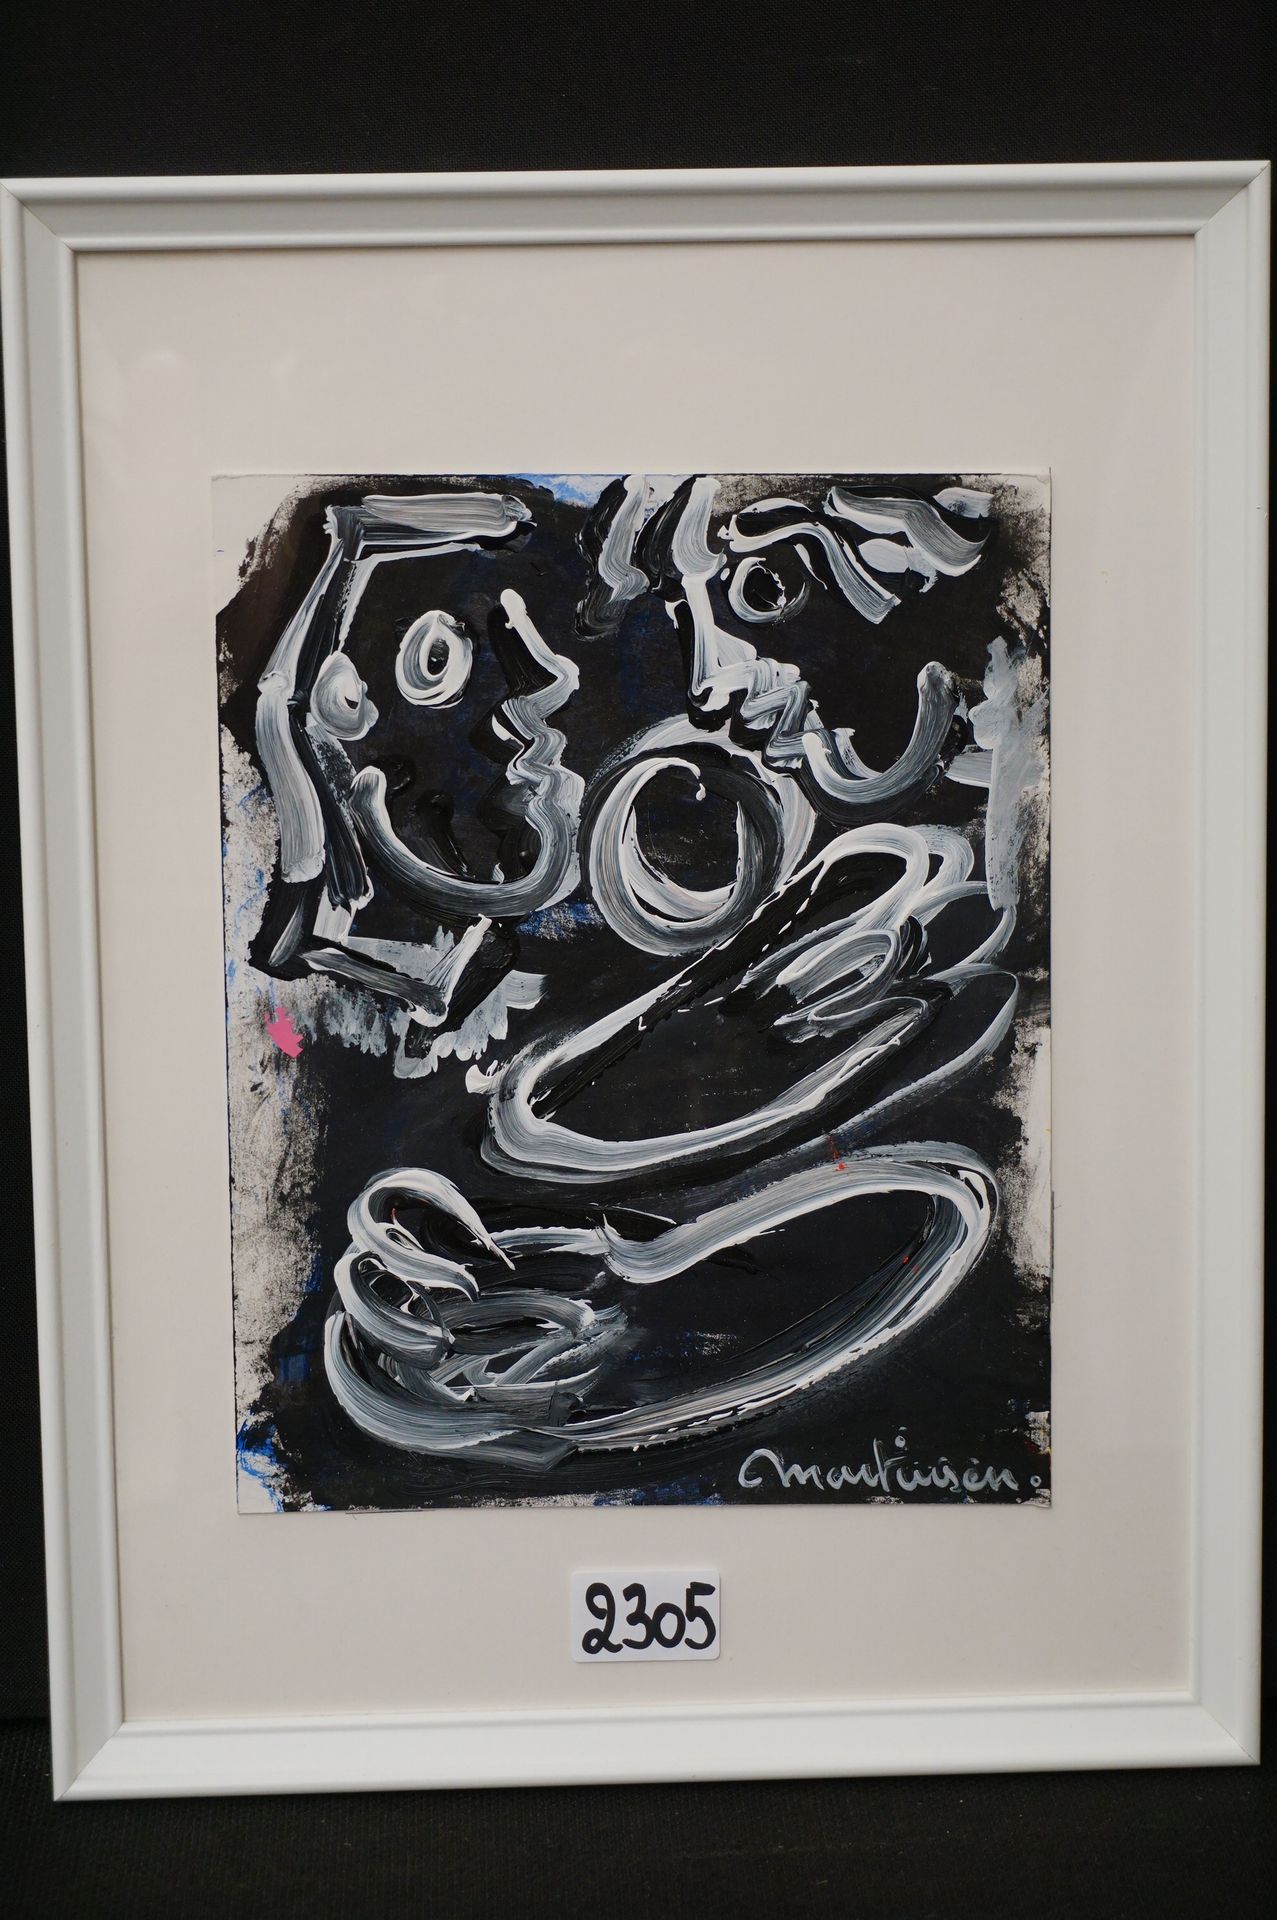 LUC MARTINSEN (1951 - ) "Composizione moderna" - Acrilico - Firmato - 27 x 22 cm